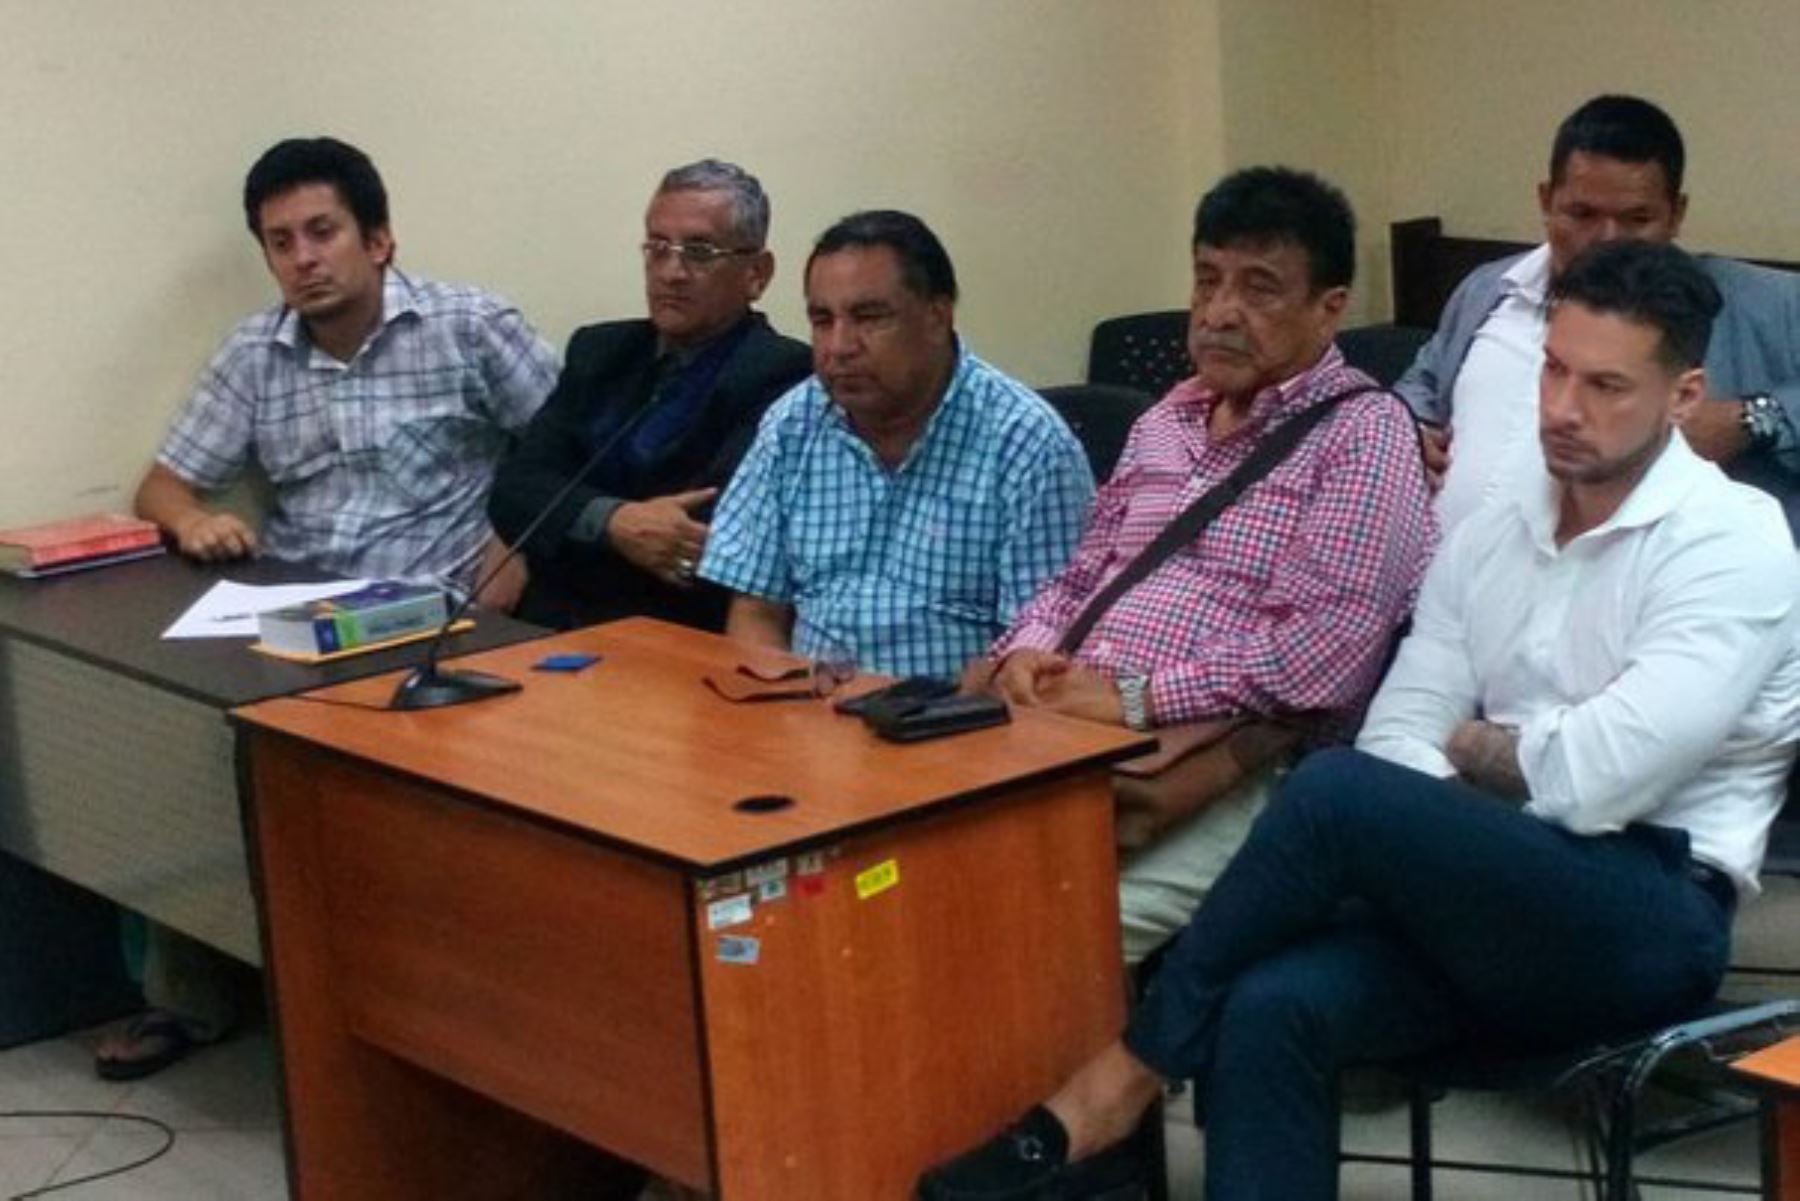 Audiencia en la que se decidió mandato de comparecencia con restricciones para el electo alcalde distrital de Olmos, Willy Serrato Puse.